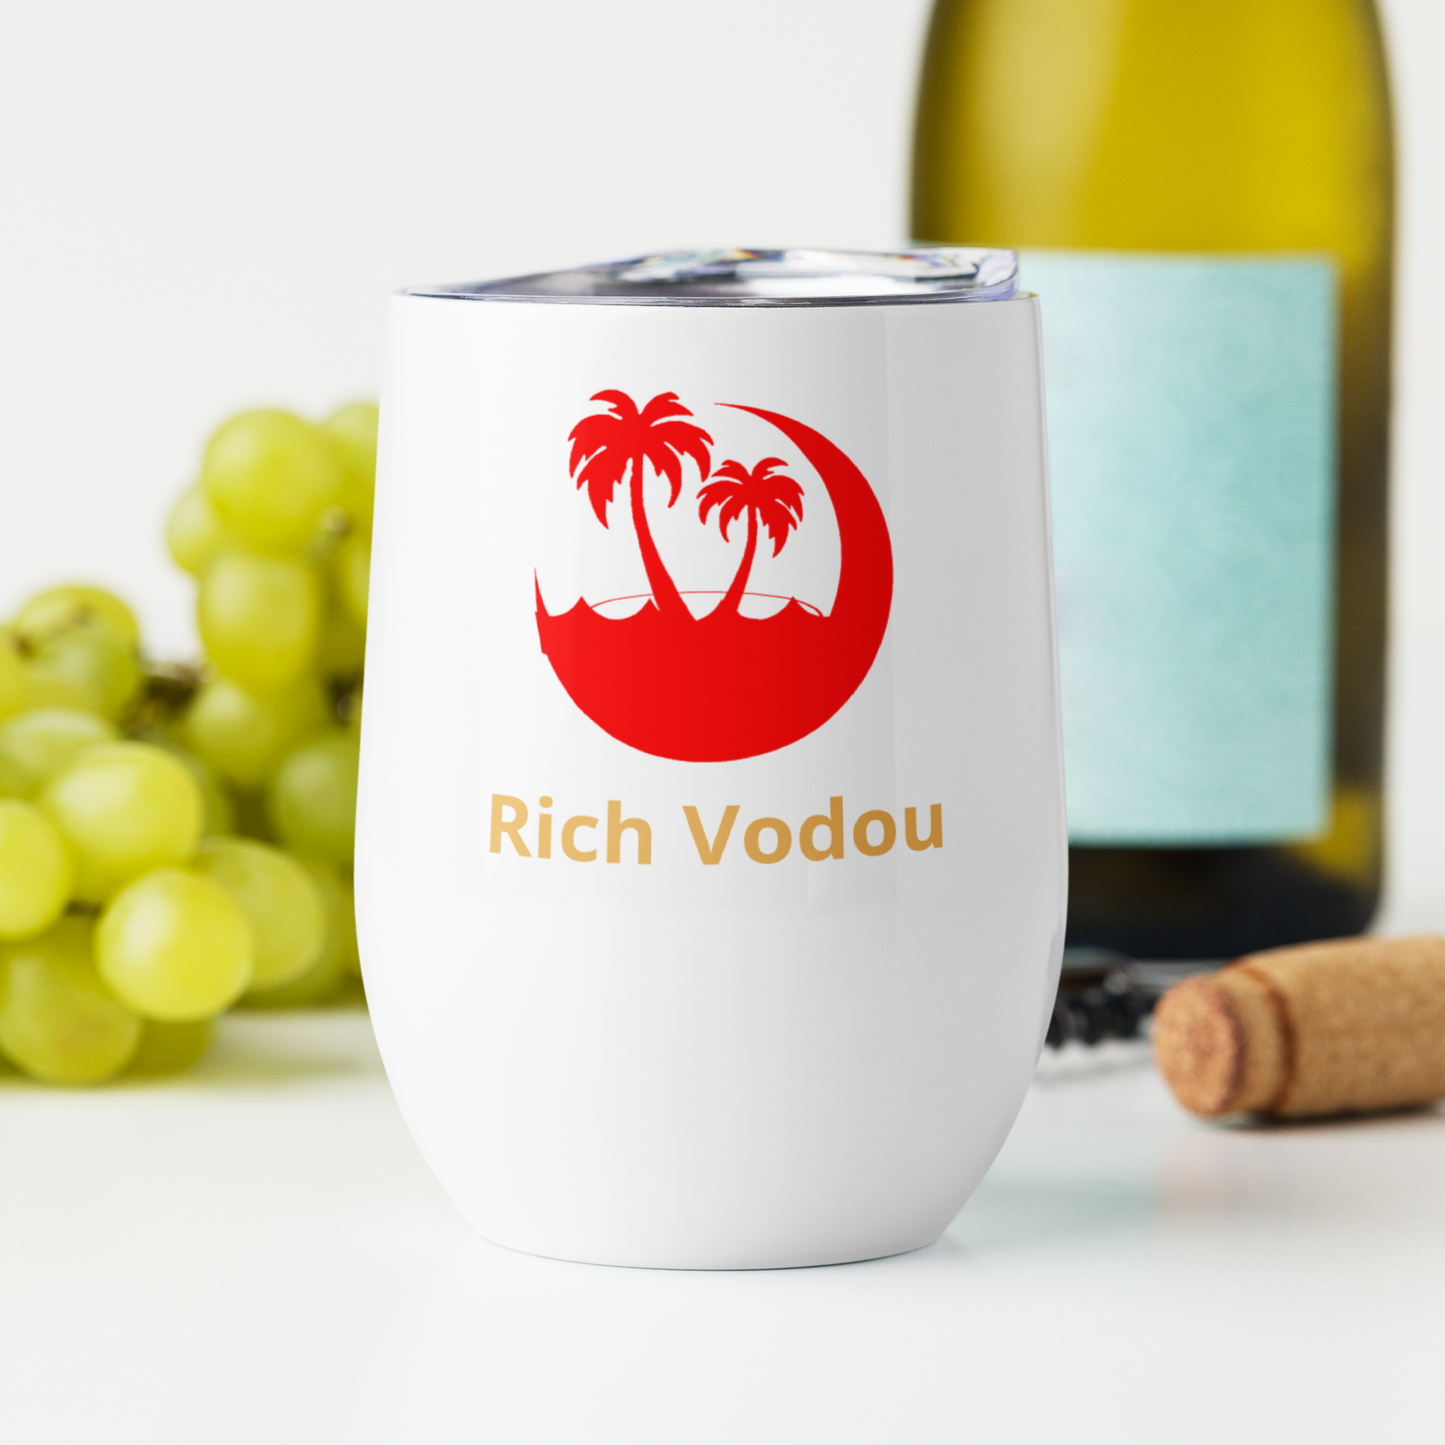 Rich Vodou Wine tumbler